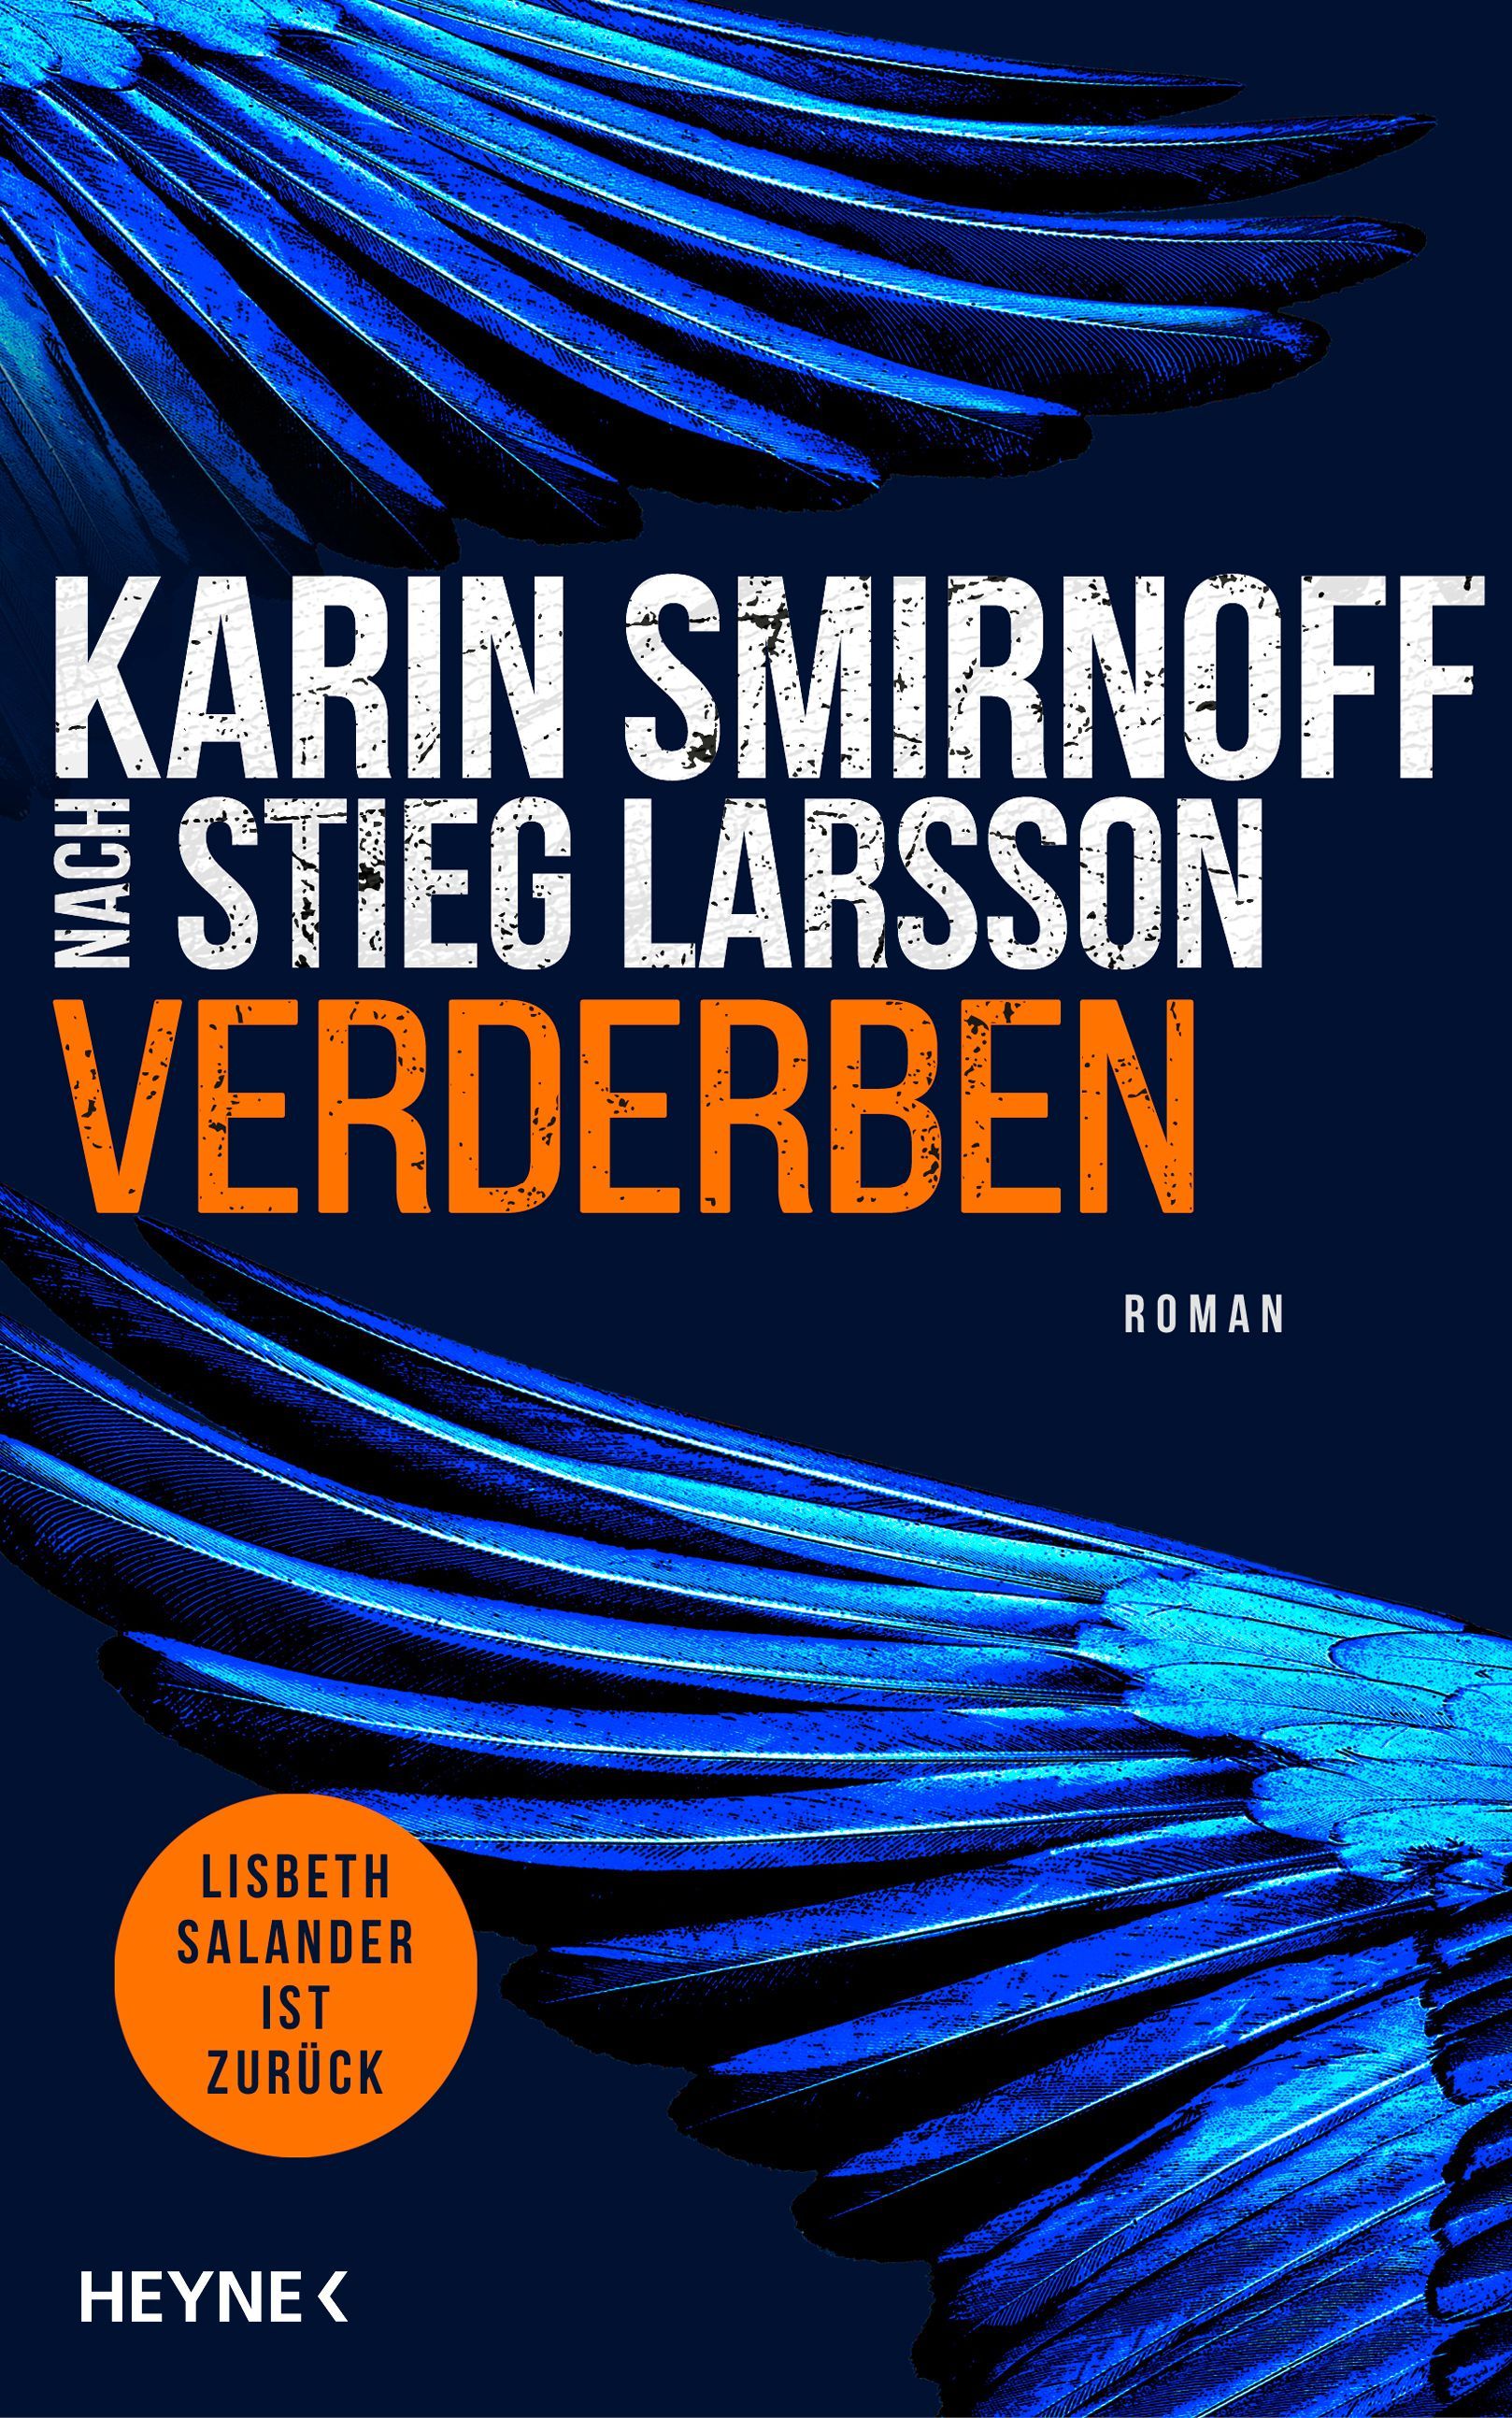 "Verderben" von Karin Smirnoff wird die "Millenium"-Trilogie von Stieg Larsson weiterführen.